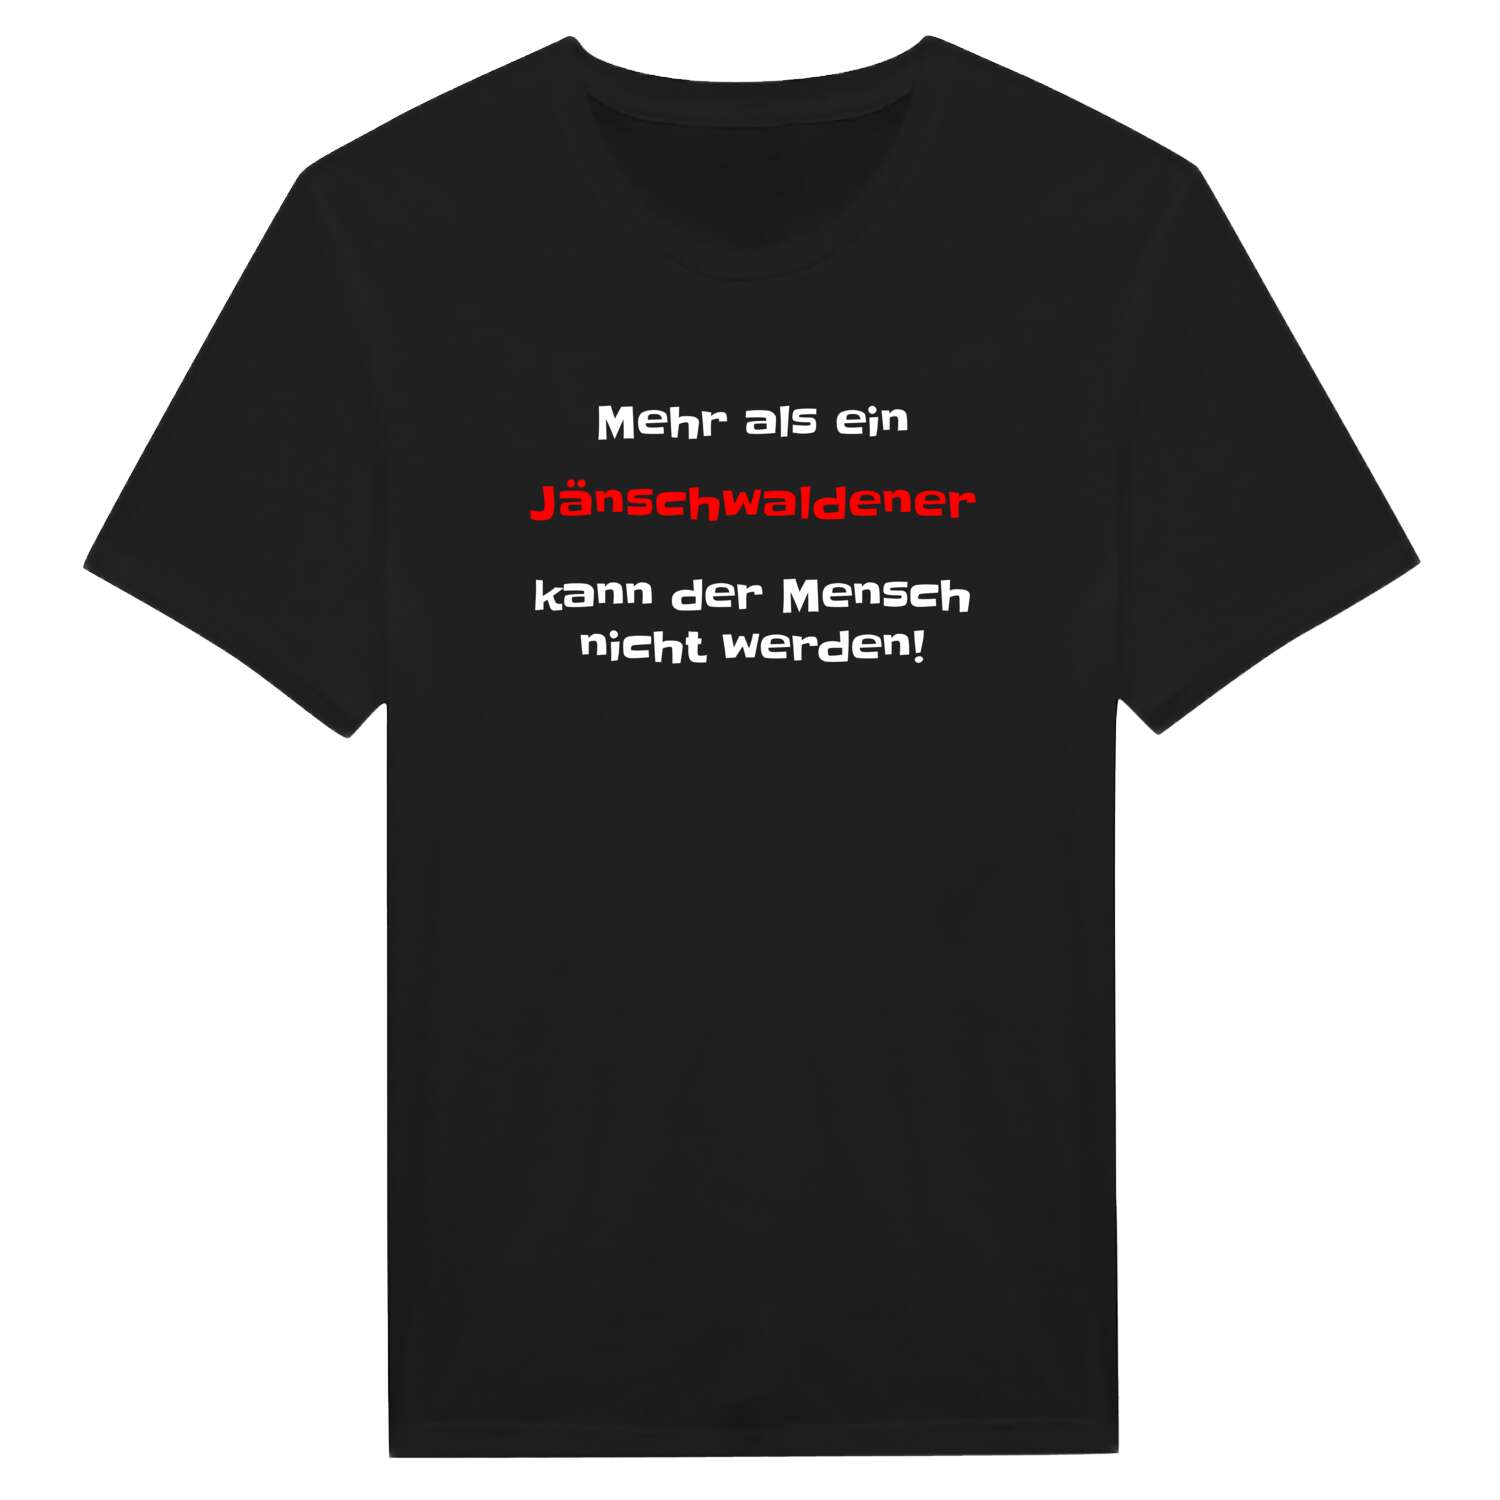 Jänschwalde T-Shirt »Mehr als ein«